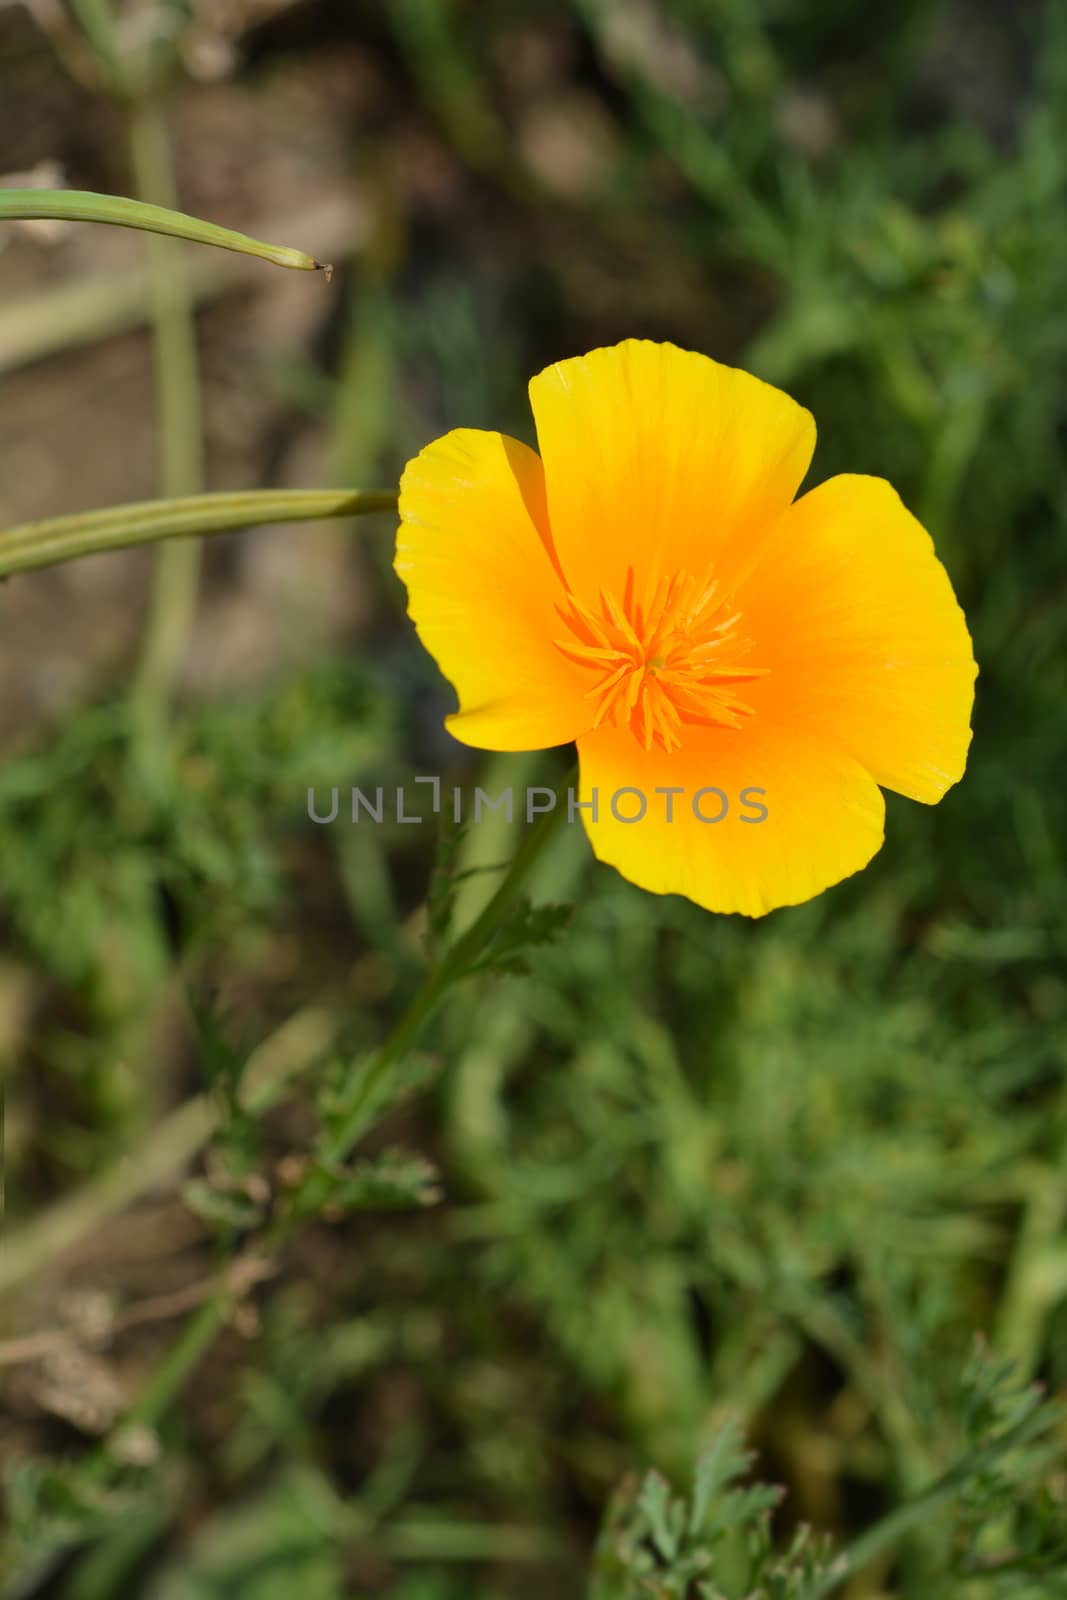 Golden poppy flower by nahhan